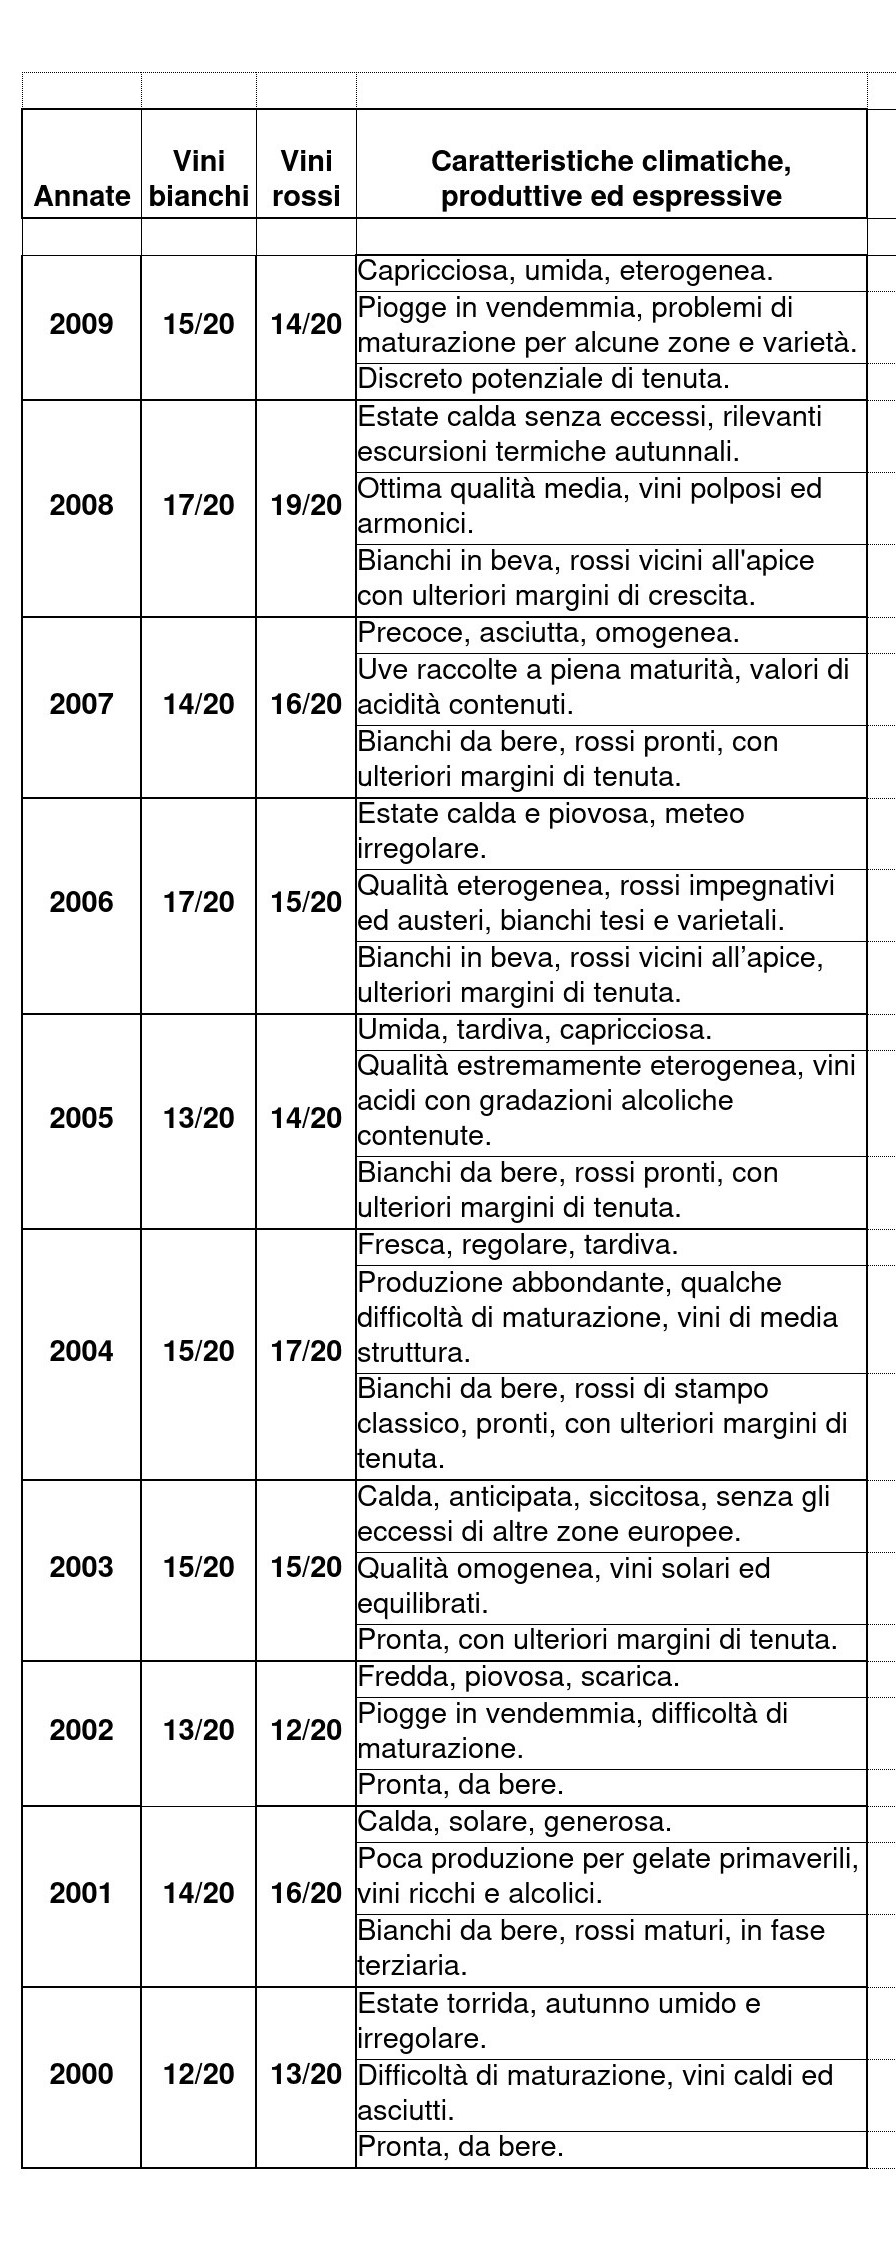 7.2.-Tabella-annate-2009-2000-1